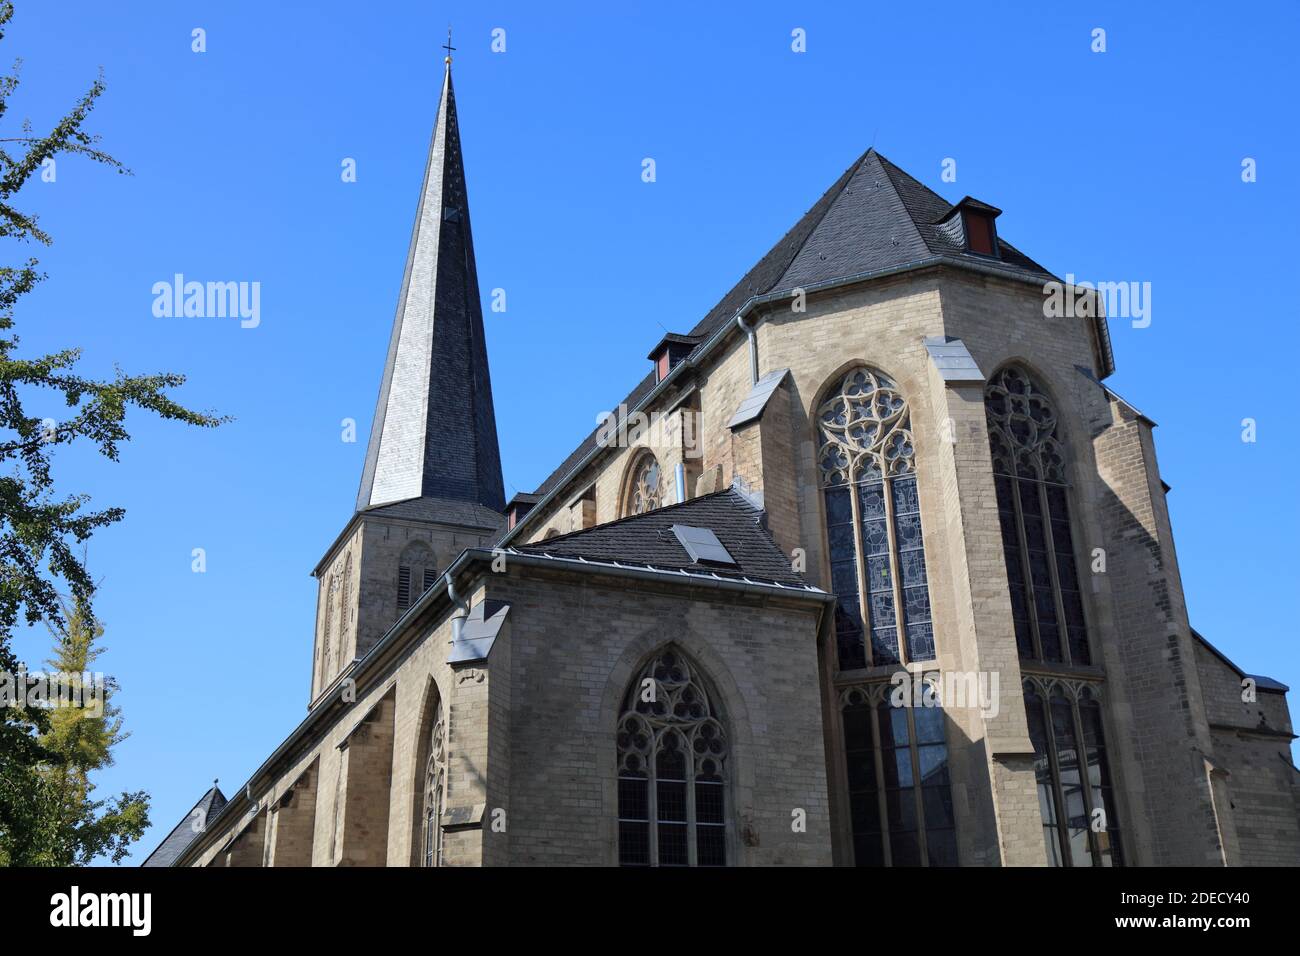 Monchengladbach Stadt in Deutschland. Stadtkirche Alter Markt - Römisch-katholische Kirche Mariä Himmelfahrt (St. Maria Himmelfahrt). Stockfoto